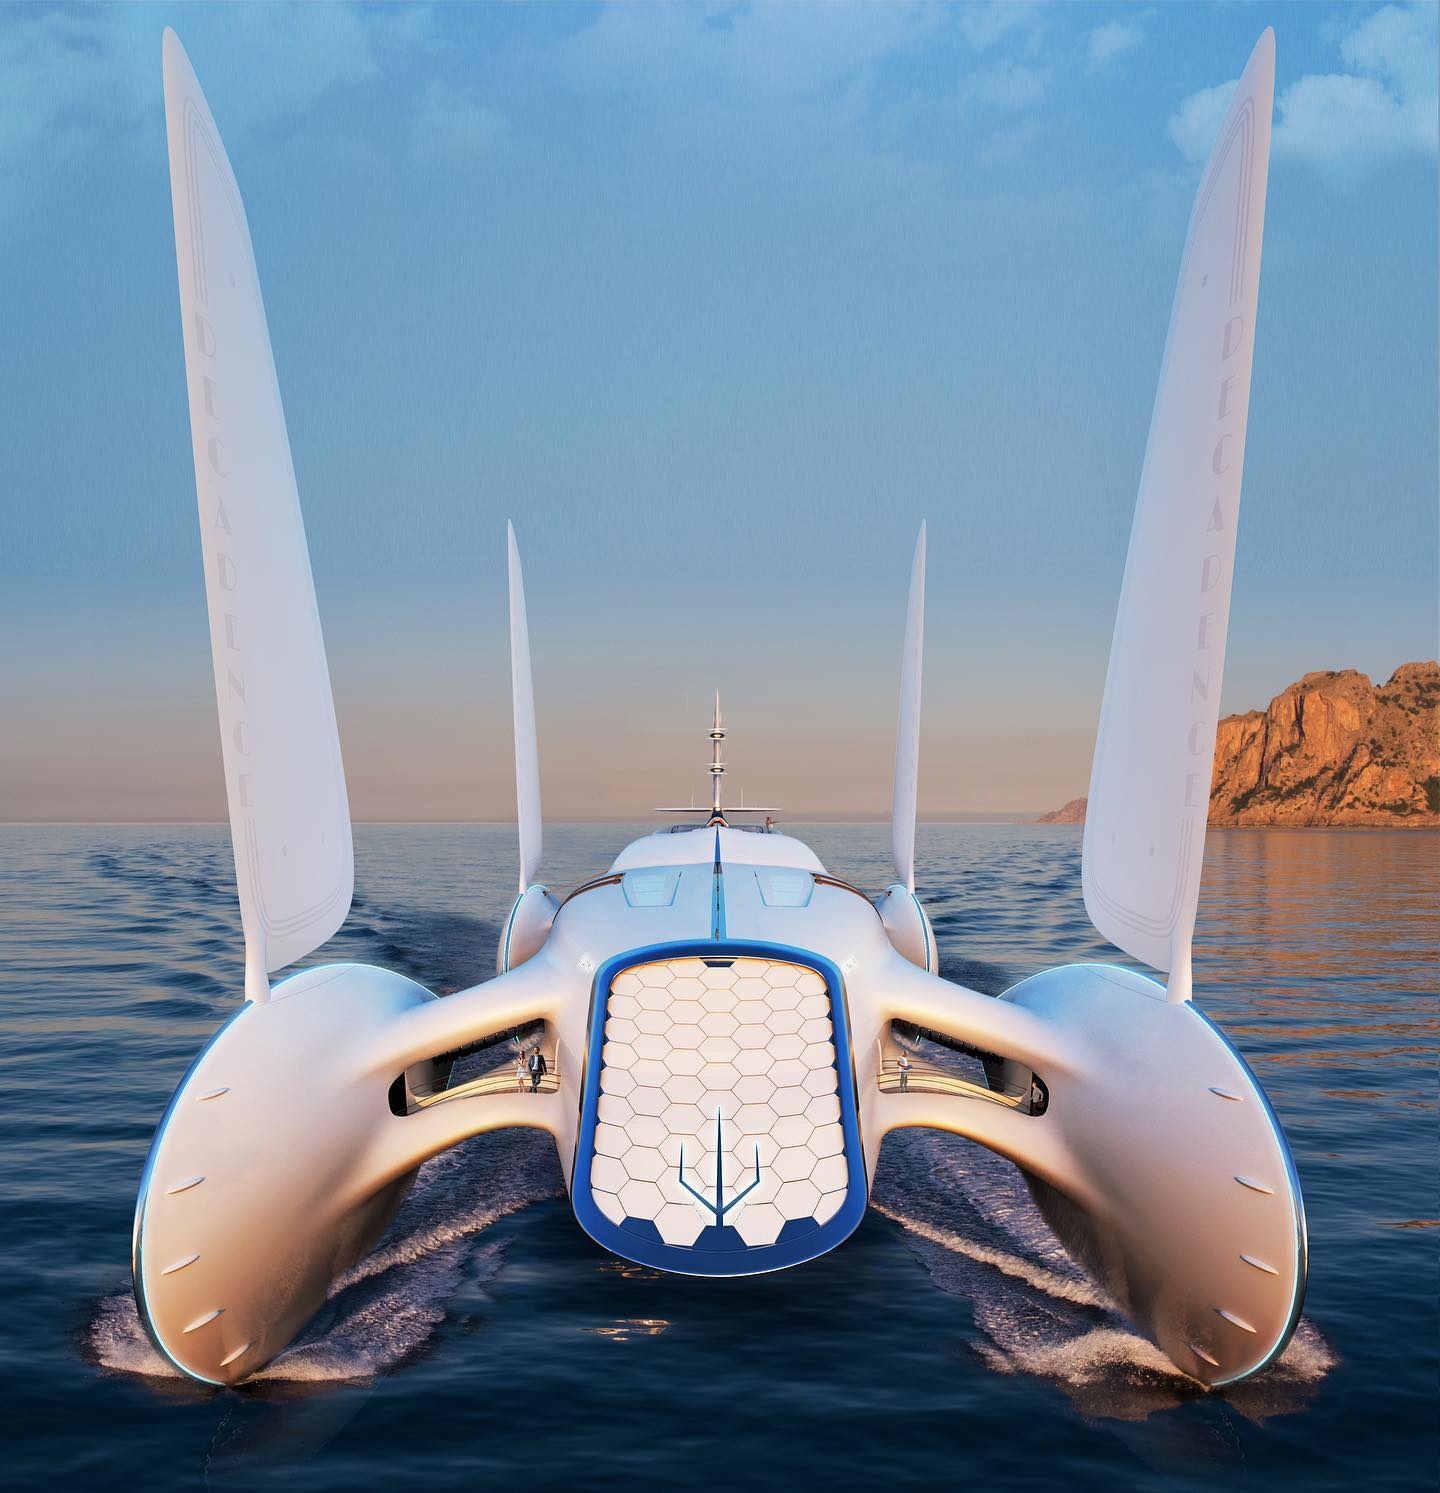 futuristic catamaran design